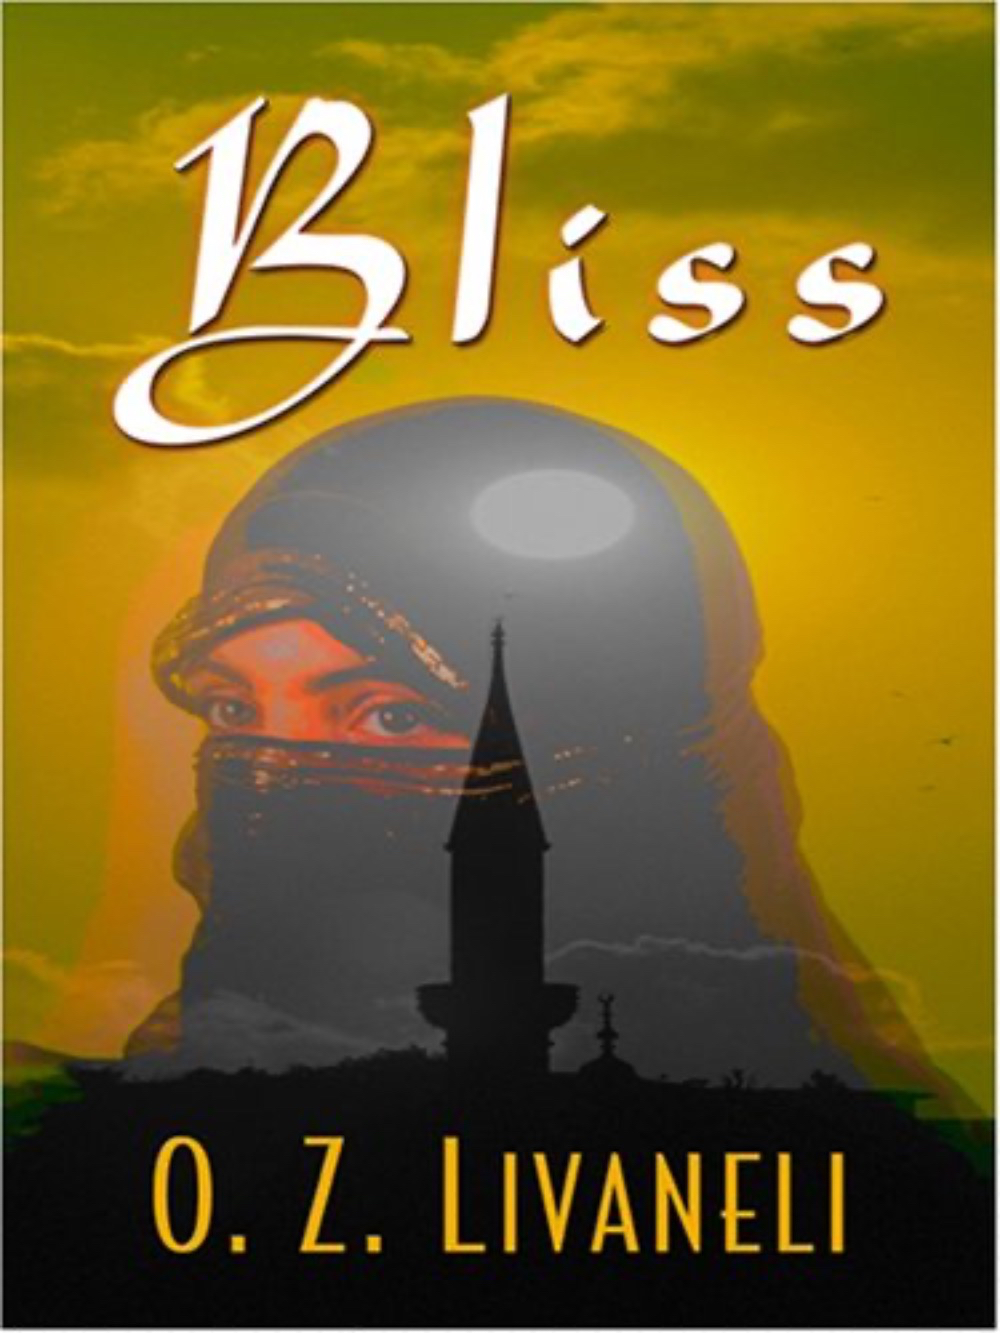 Bliss by O.Z. Livaneli